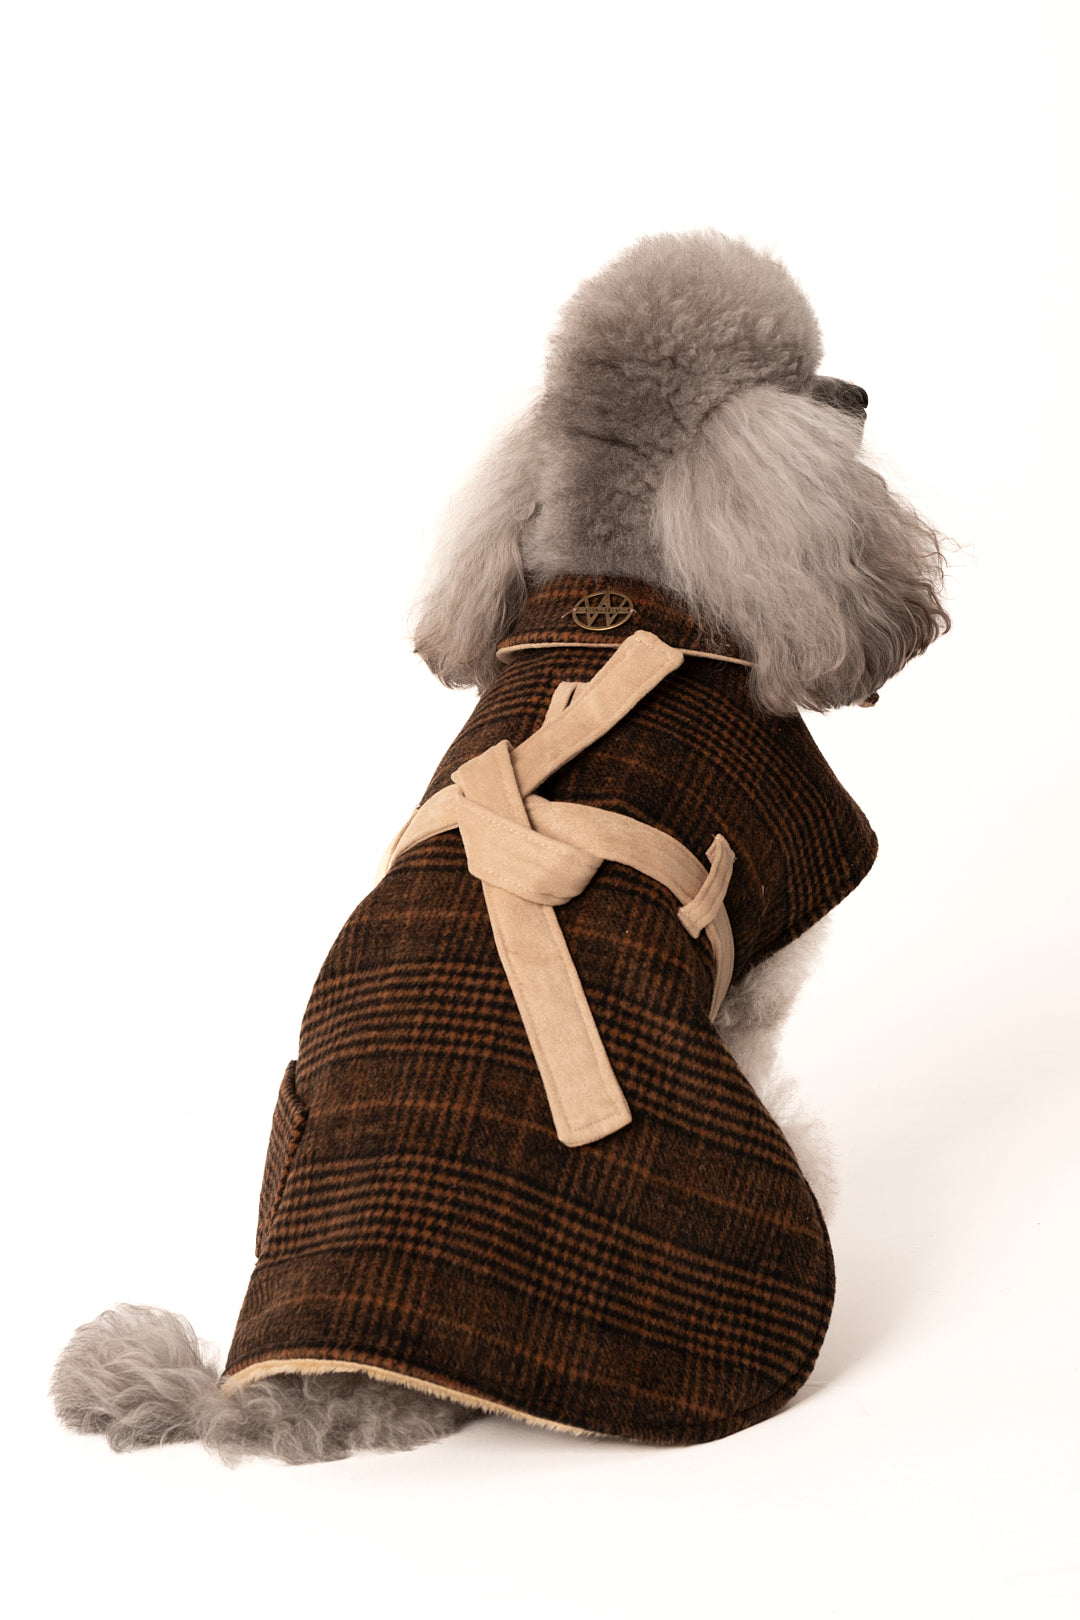 Capa en lana de cuadros con cinturón y bolsillos laterales - marrón